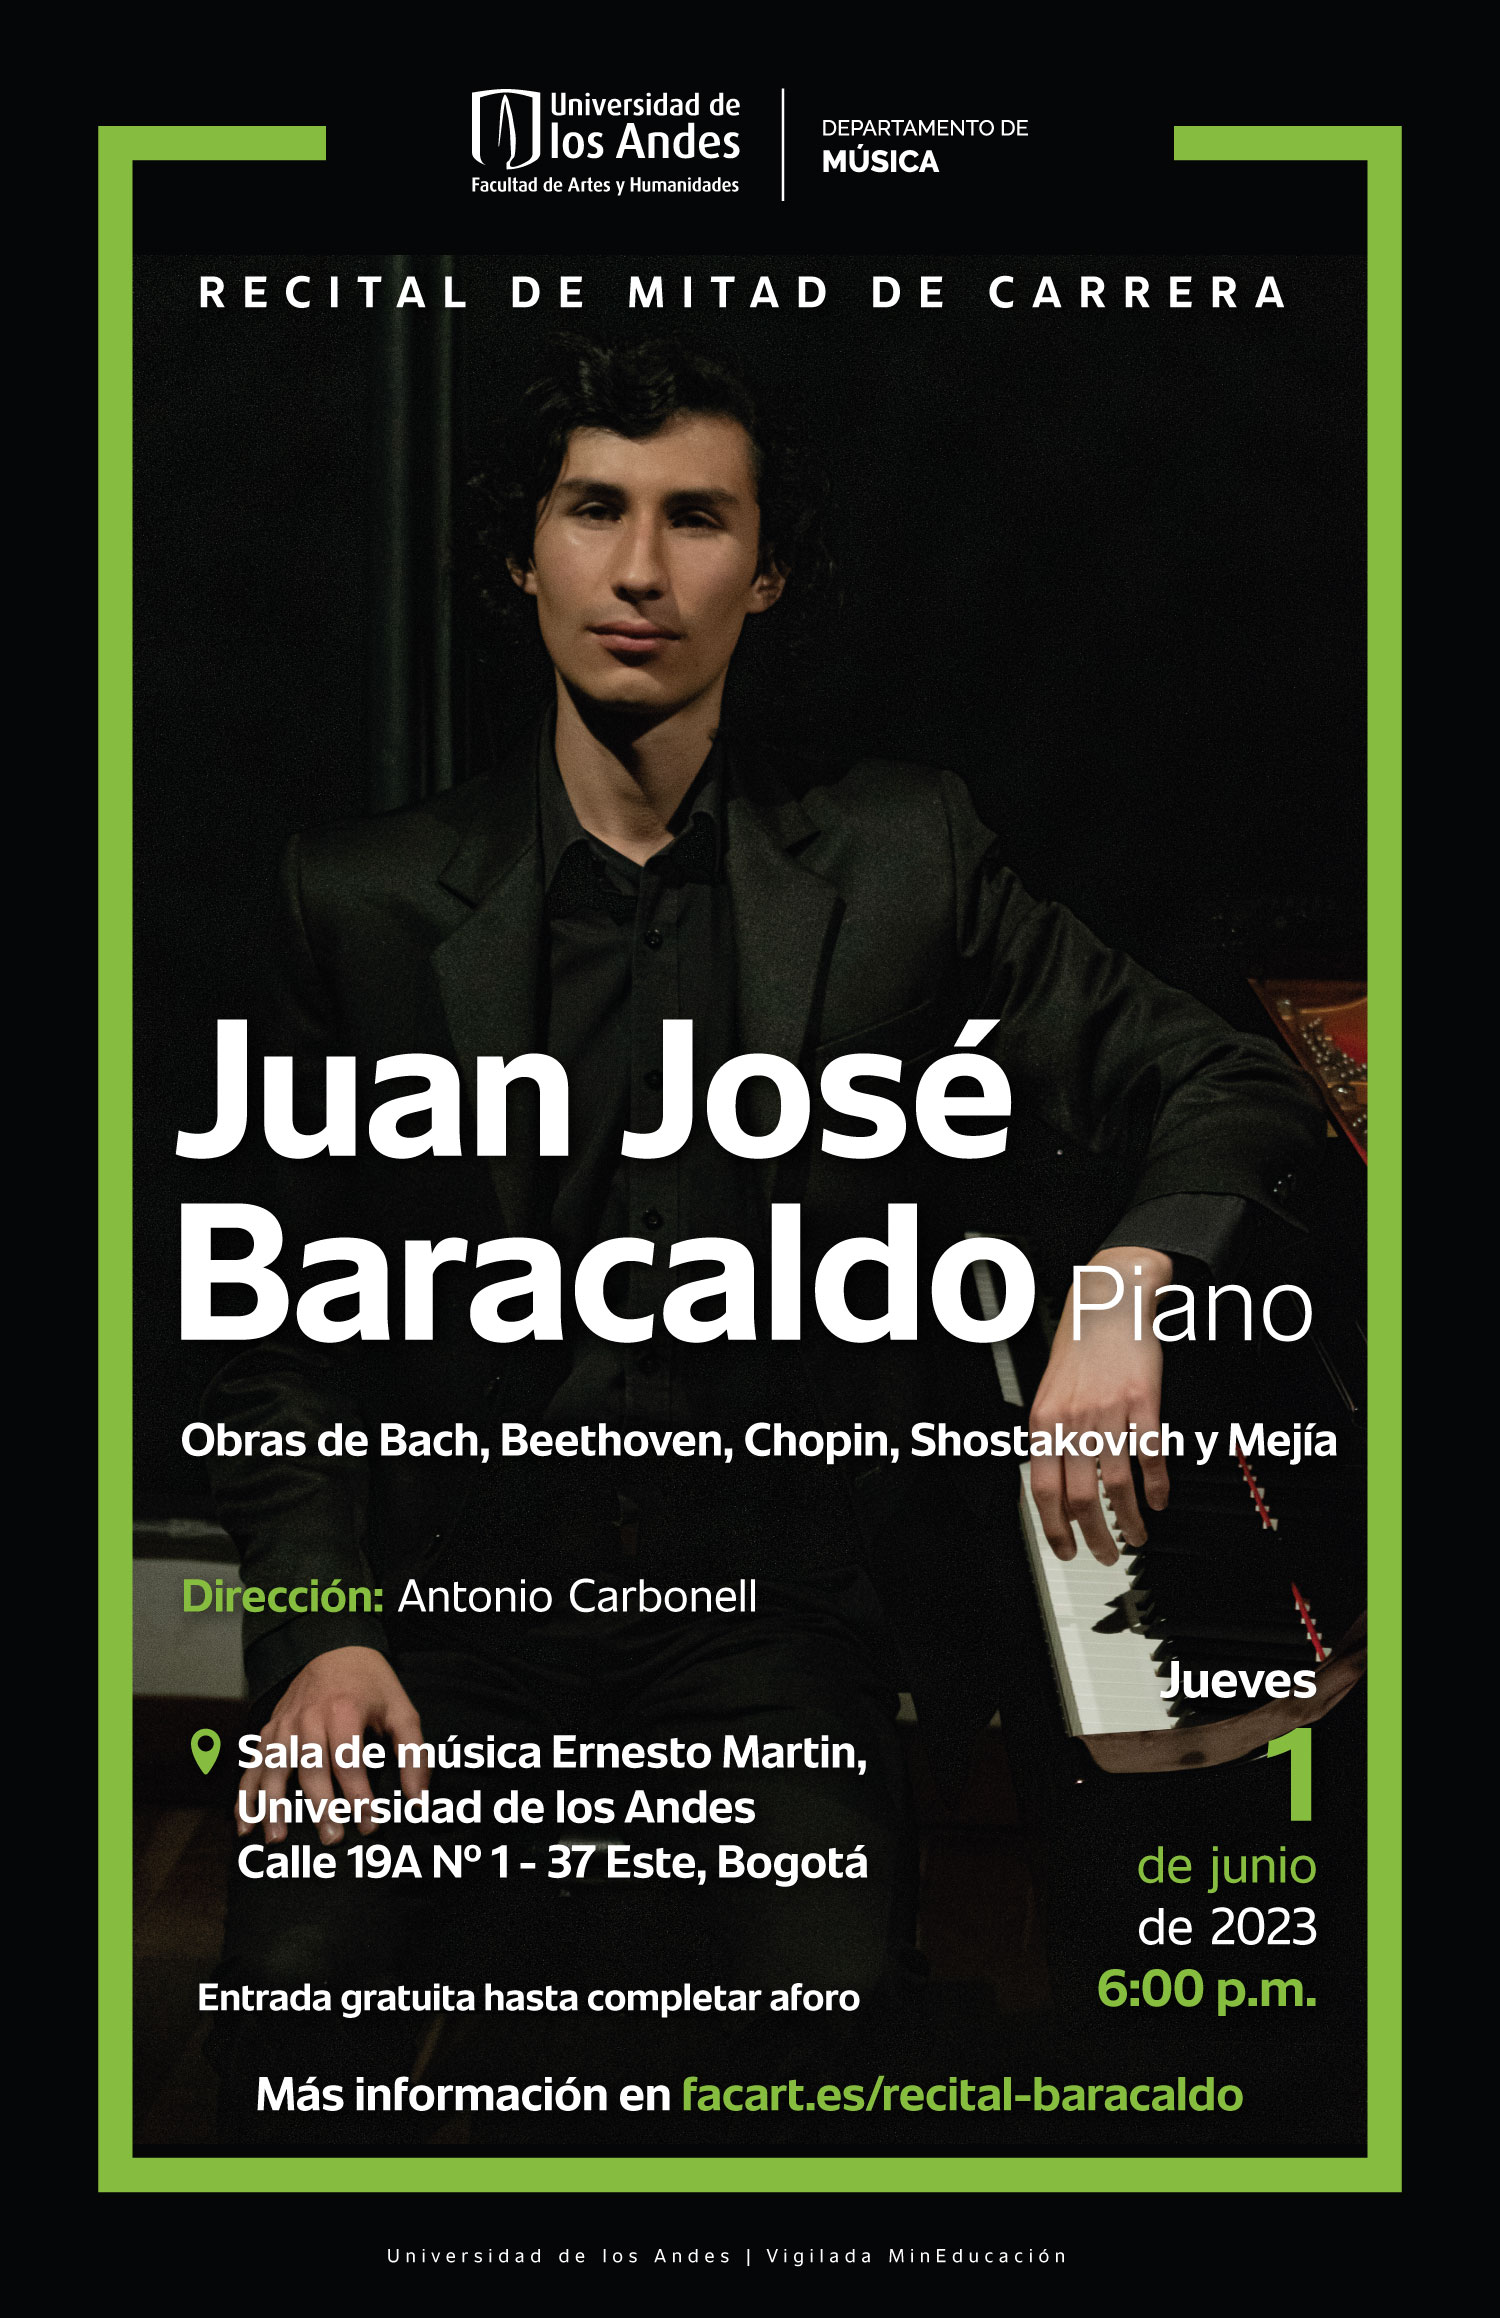 Recital de mitad de carrera: Juan José Baracaldo (piano)